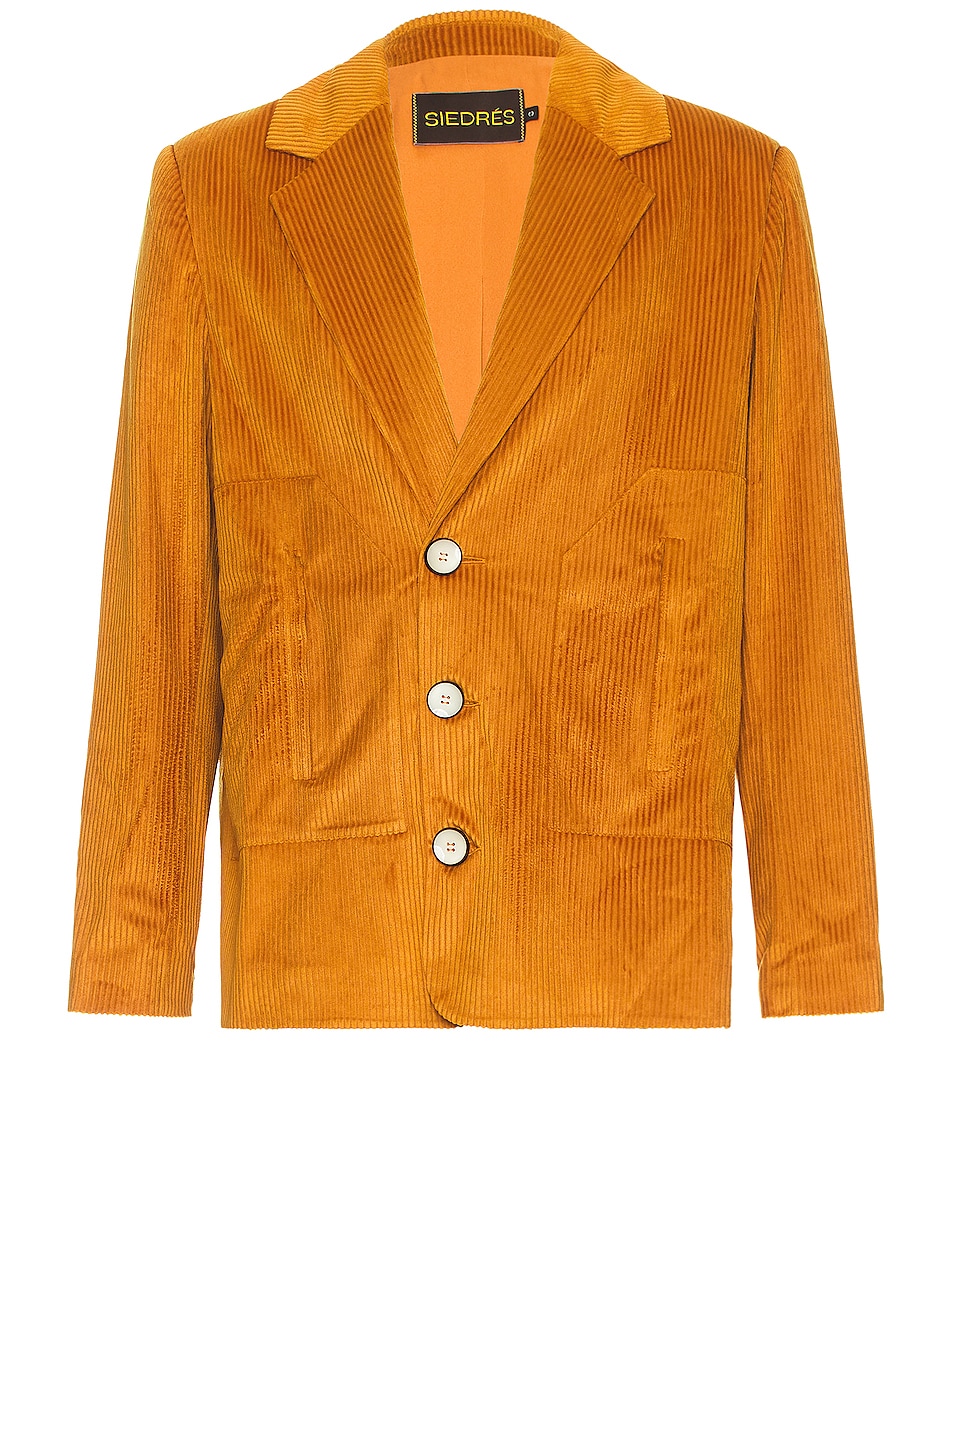 Image 1 of SIEDRES Corduroy Suit Jacket in Mustard